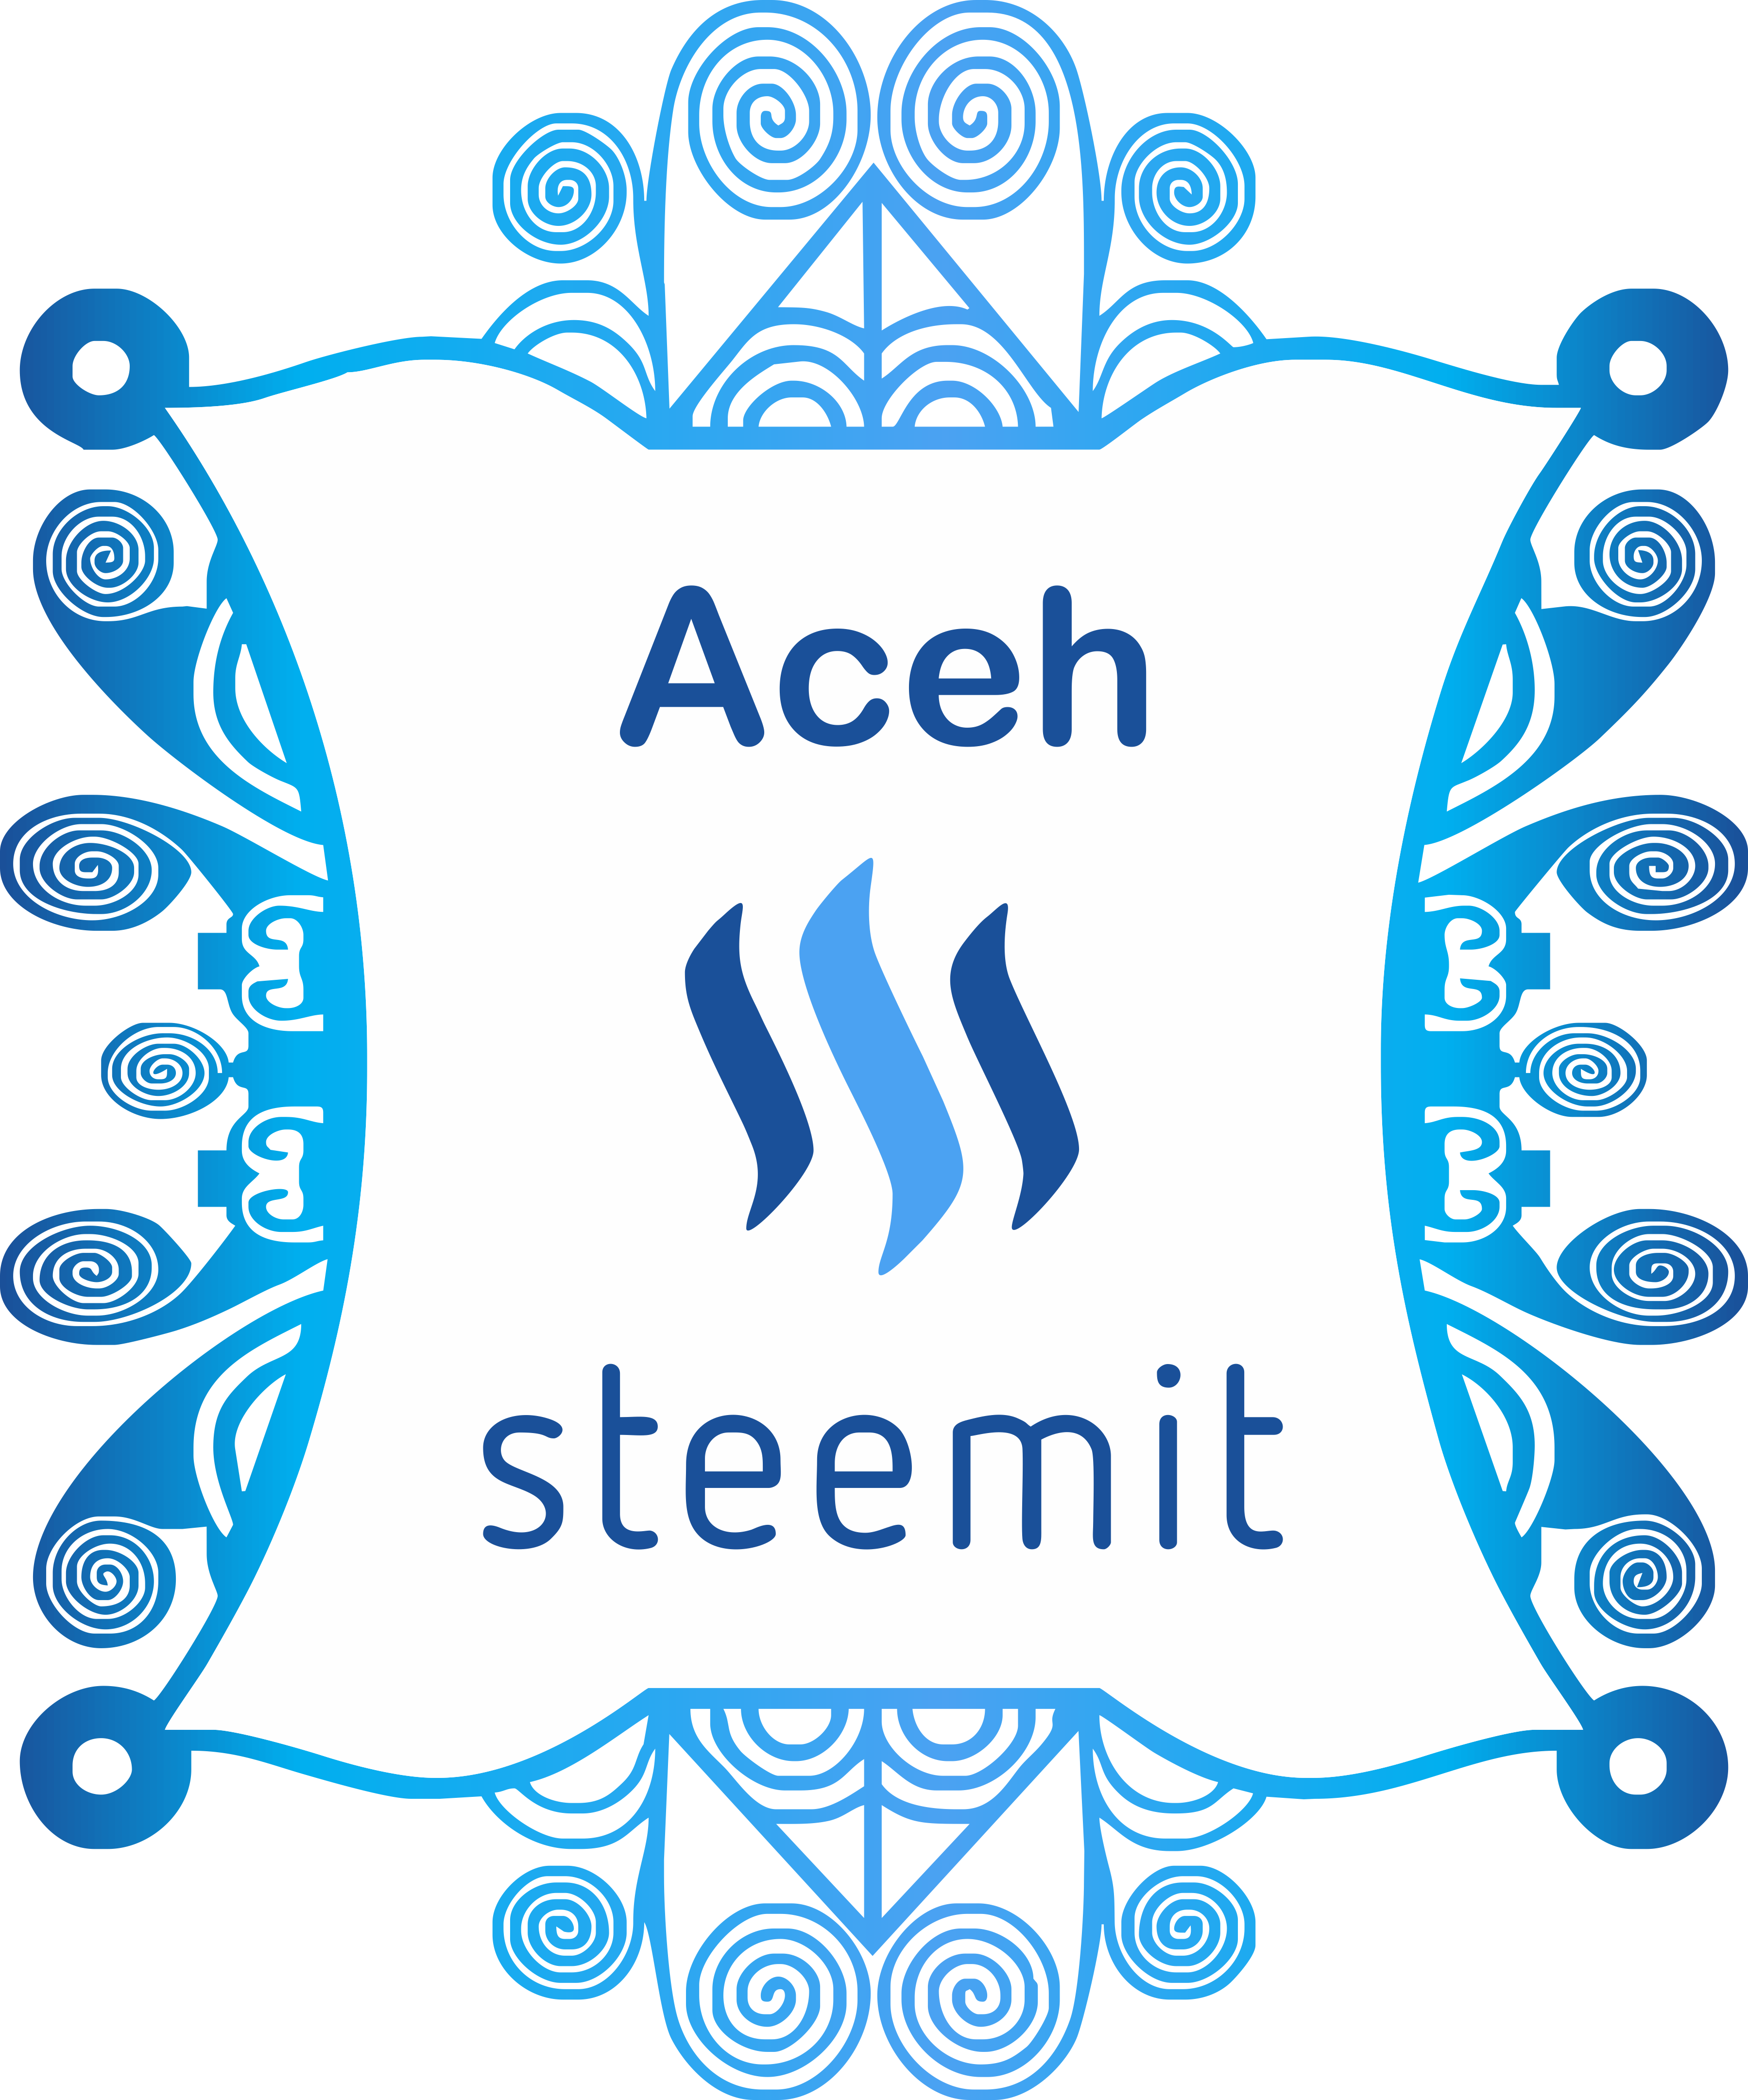 #aceh Steemit Logo Design By Foways - Cara Perkenalkan Diri Di Steemit Clipart (3598x4323), Png Download